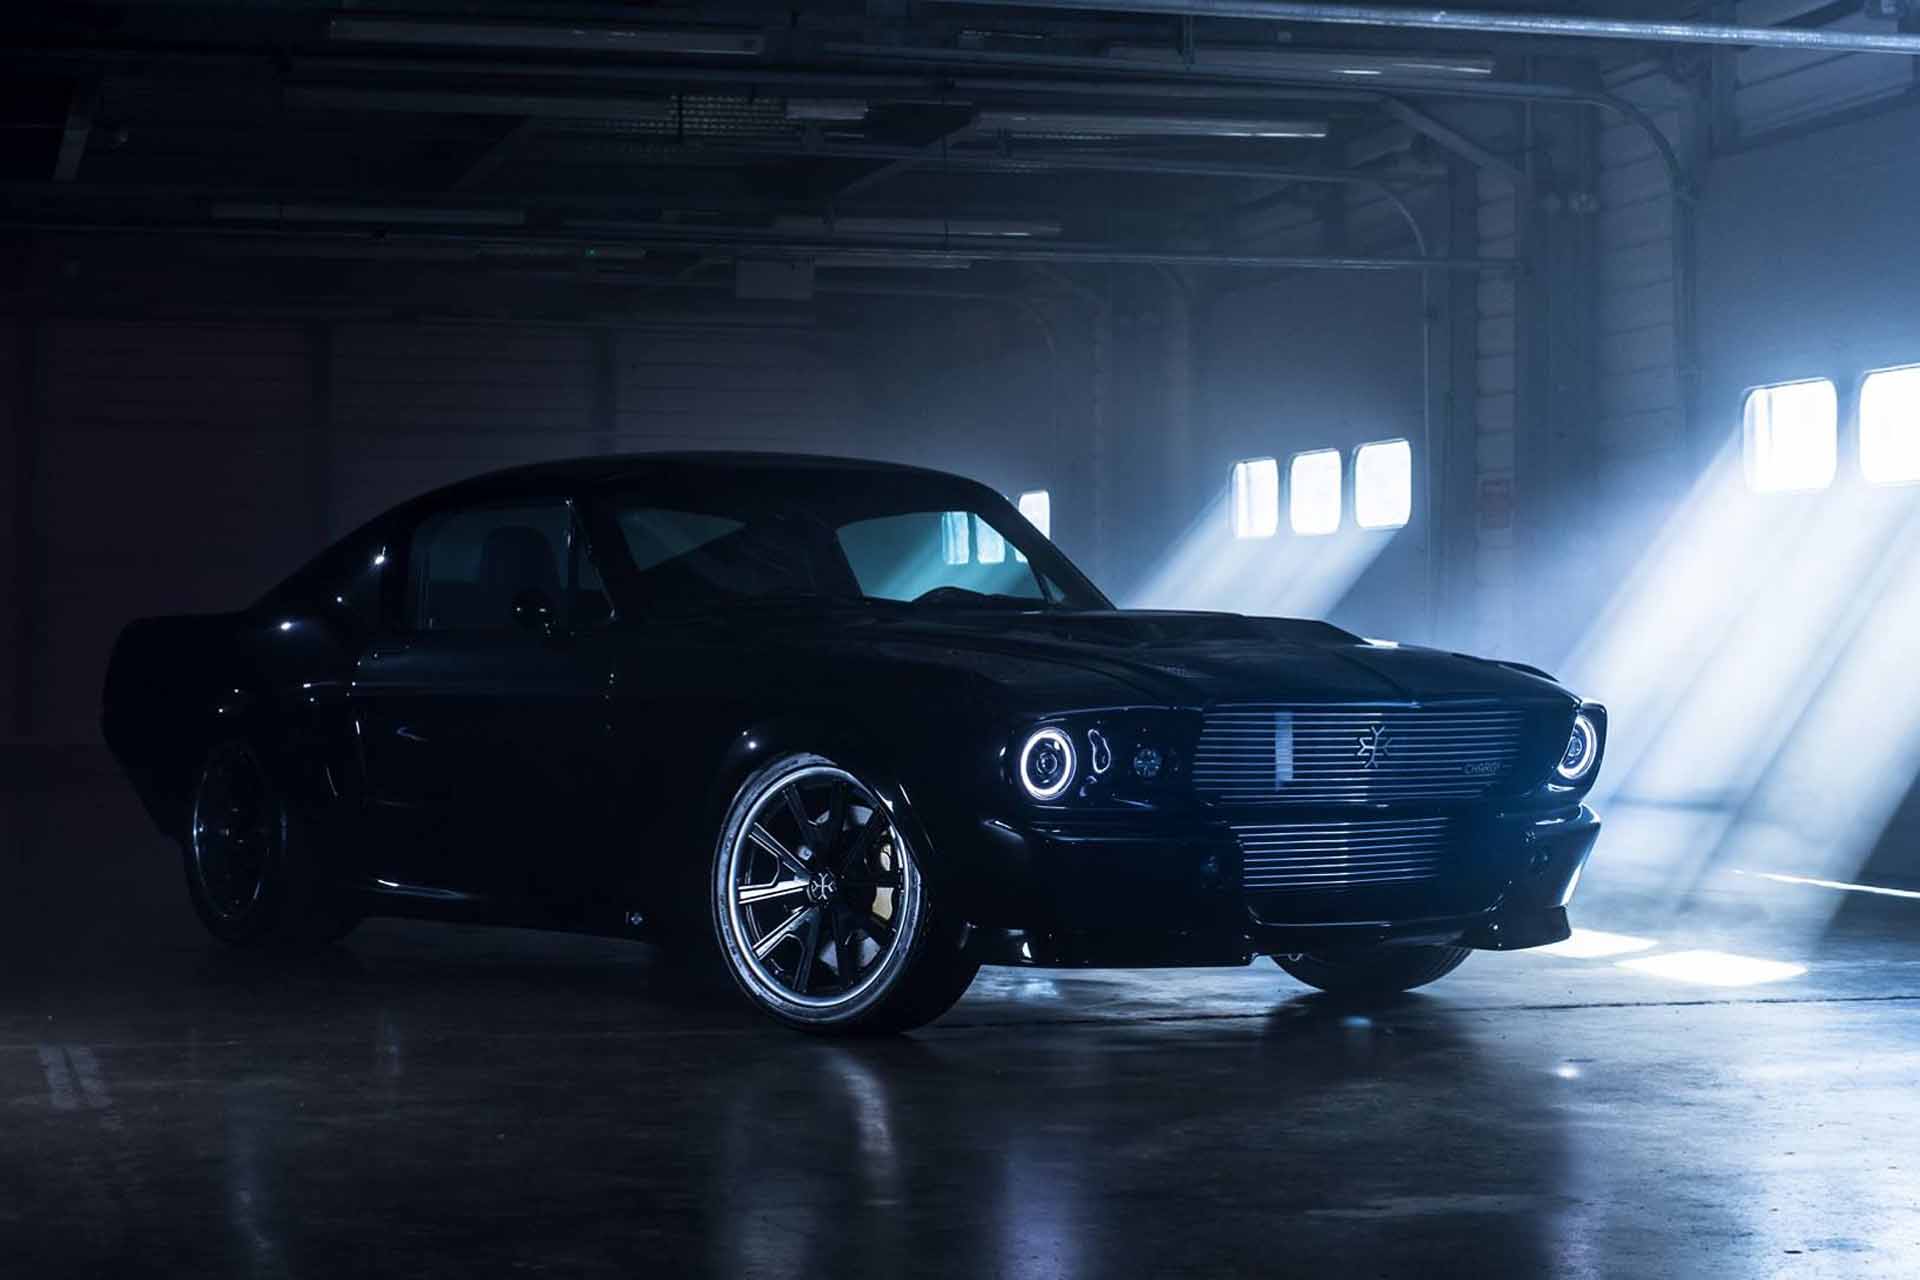 Schwarzer Ford Mustang steht in dunkler Halle, Licht fällt durch die Fenster ein.